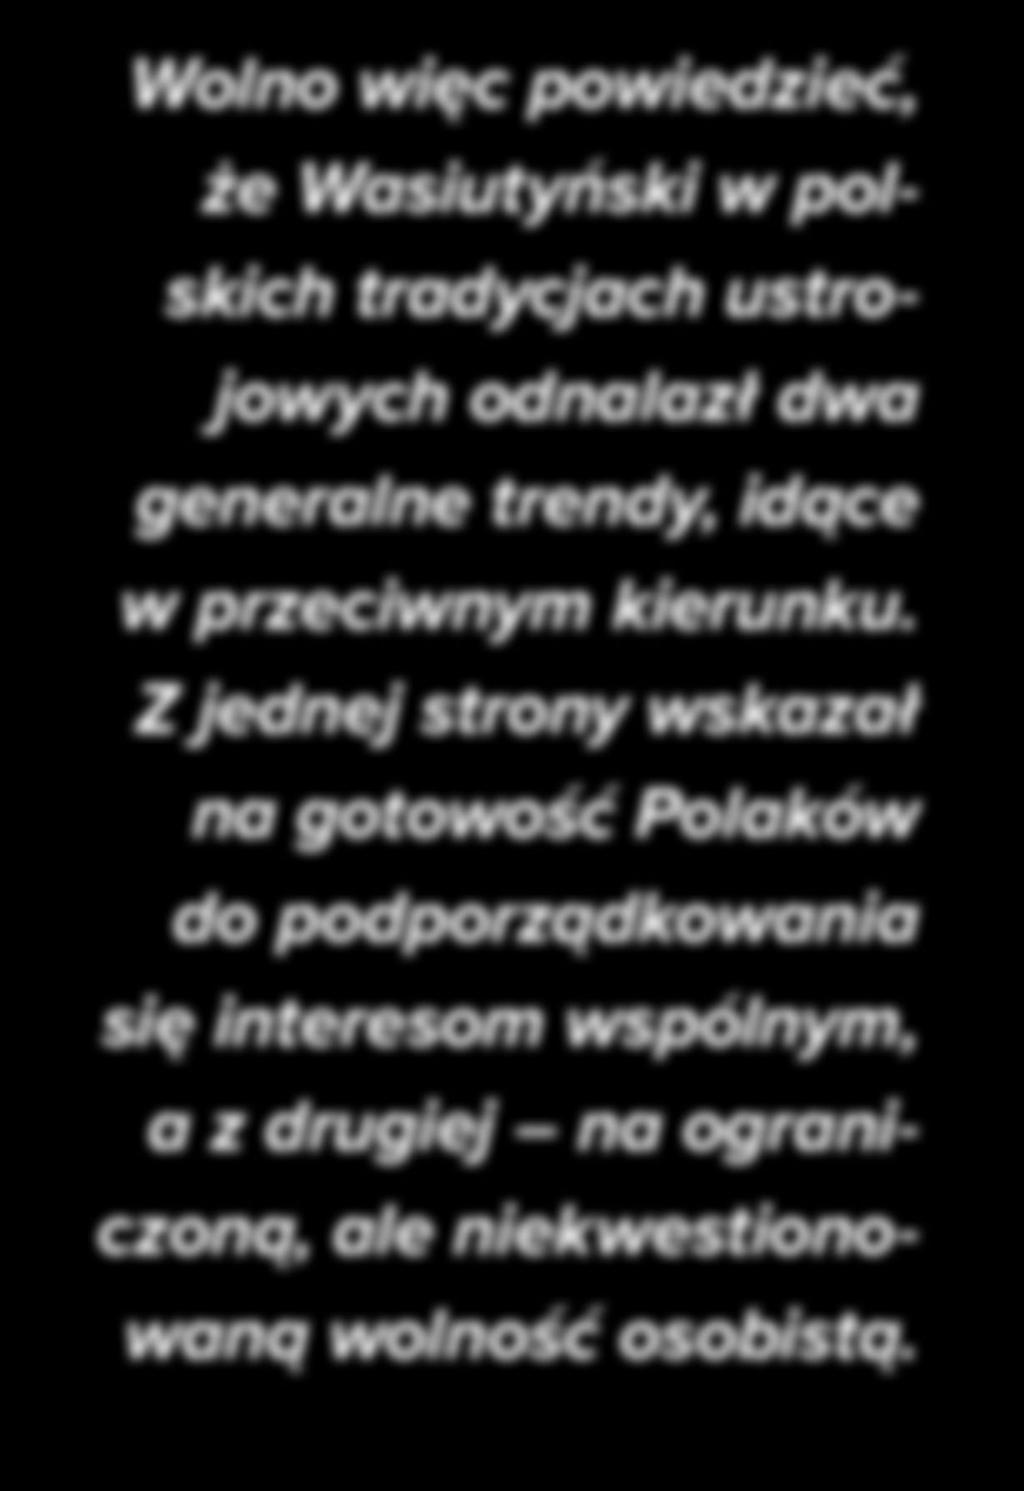 HISTORIA Wolno więc powiedzieć, że Wasiutyński w polskich tradycjach ustrojowych odnalazł dwa generalne trendy, idące w przeciwnym kierunku.